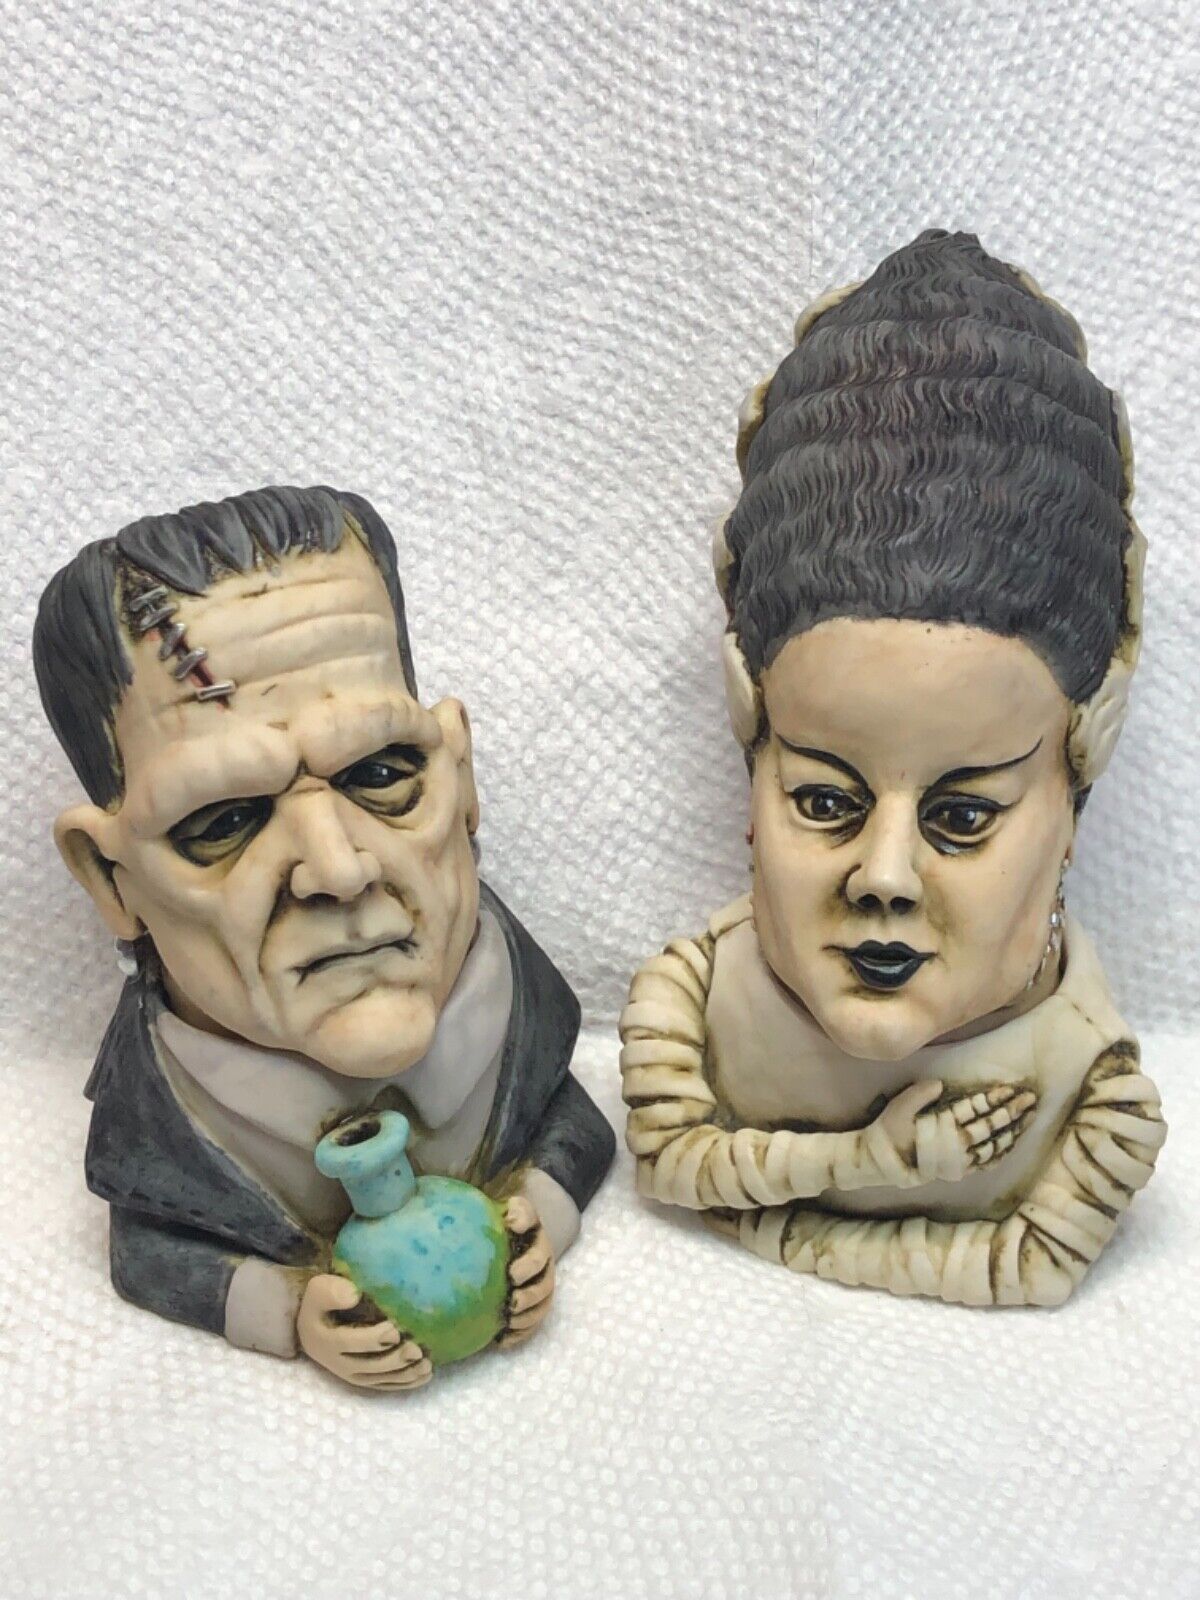 FRMR Kevin Francis Face Pot Artst Neil Eyre Halloween Bride Frankenstein Monster